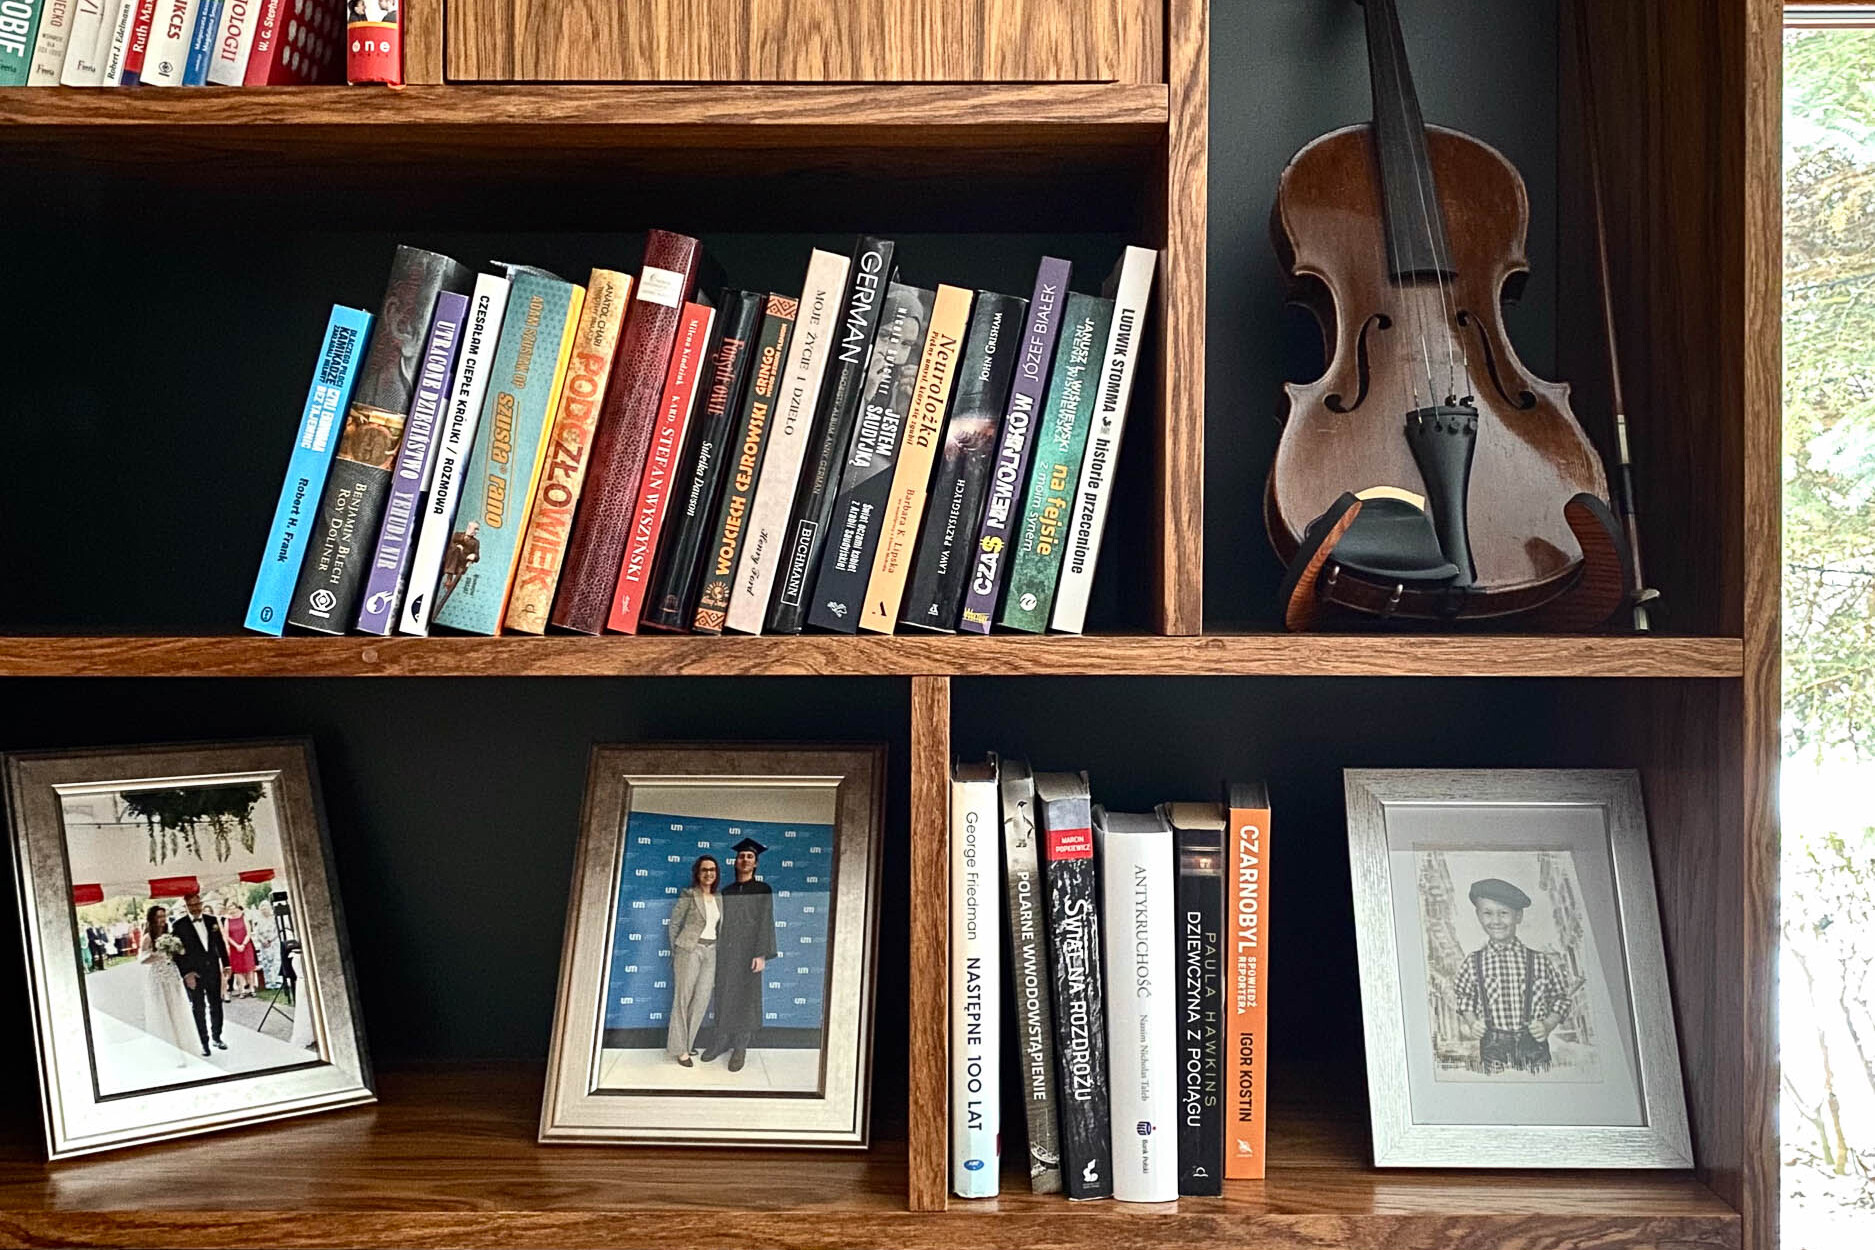 przedmioty w biblioteczce: ramki ze zdjęciami, skrzypce i książki